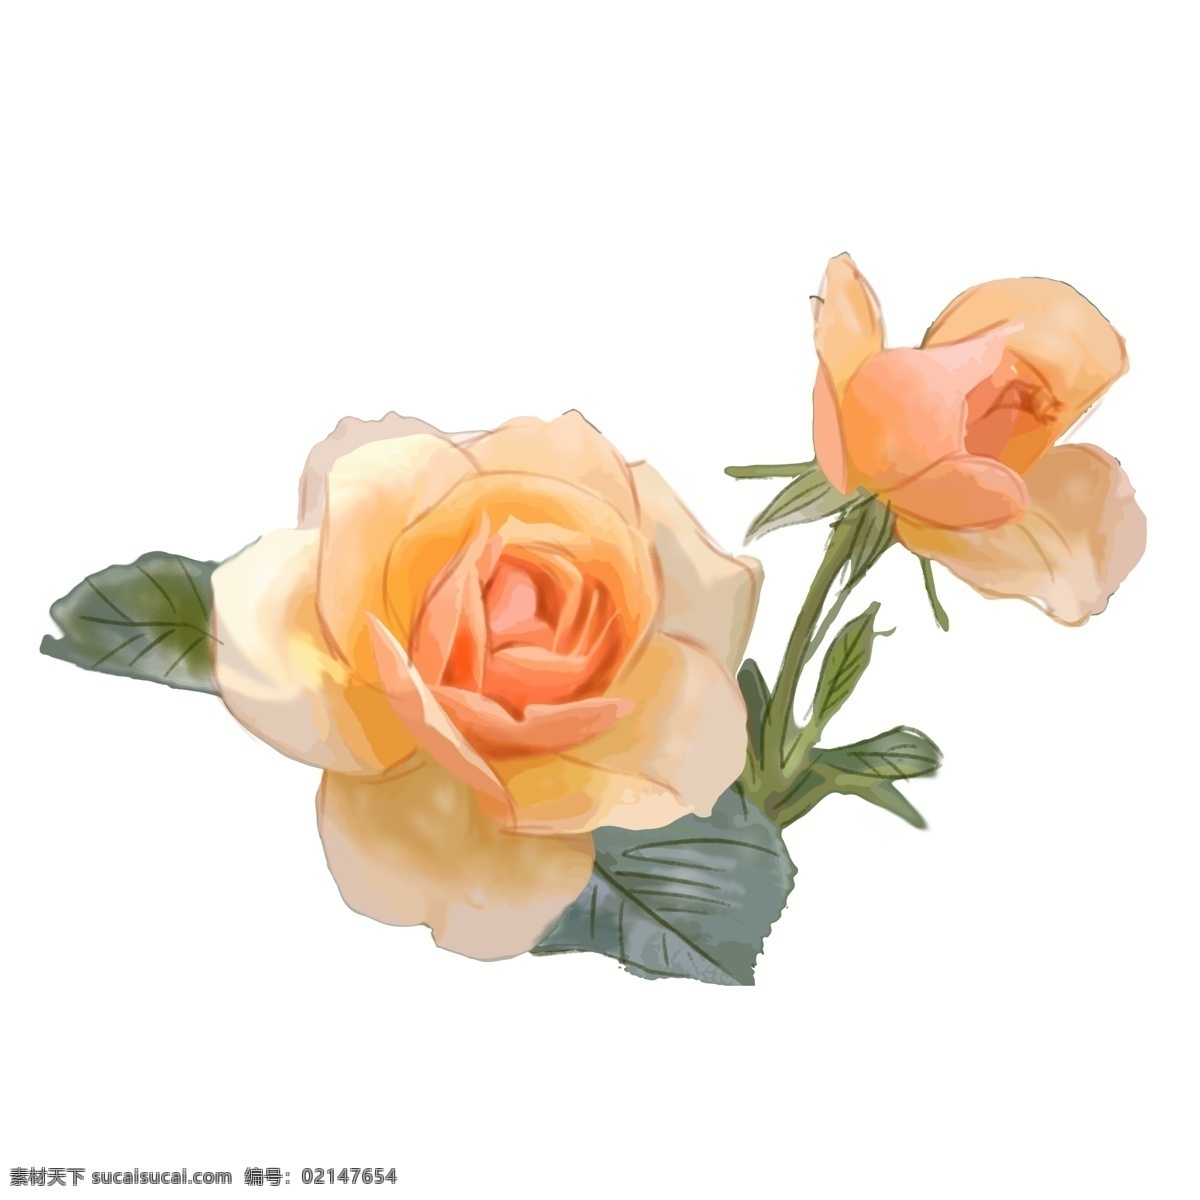 黄色 玫瑰 蔷薇 花朵 花卉 商用 元素 装饰 橙色 可商用 设计元素 珊瑚橘